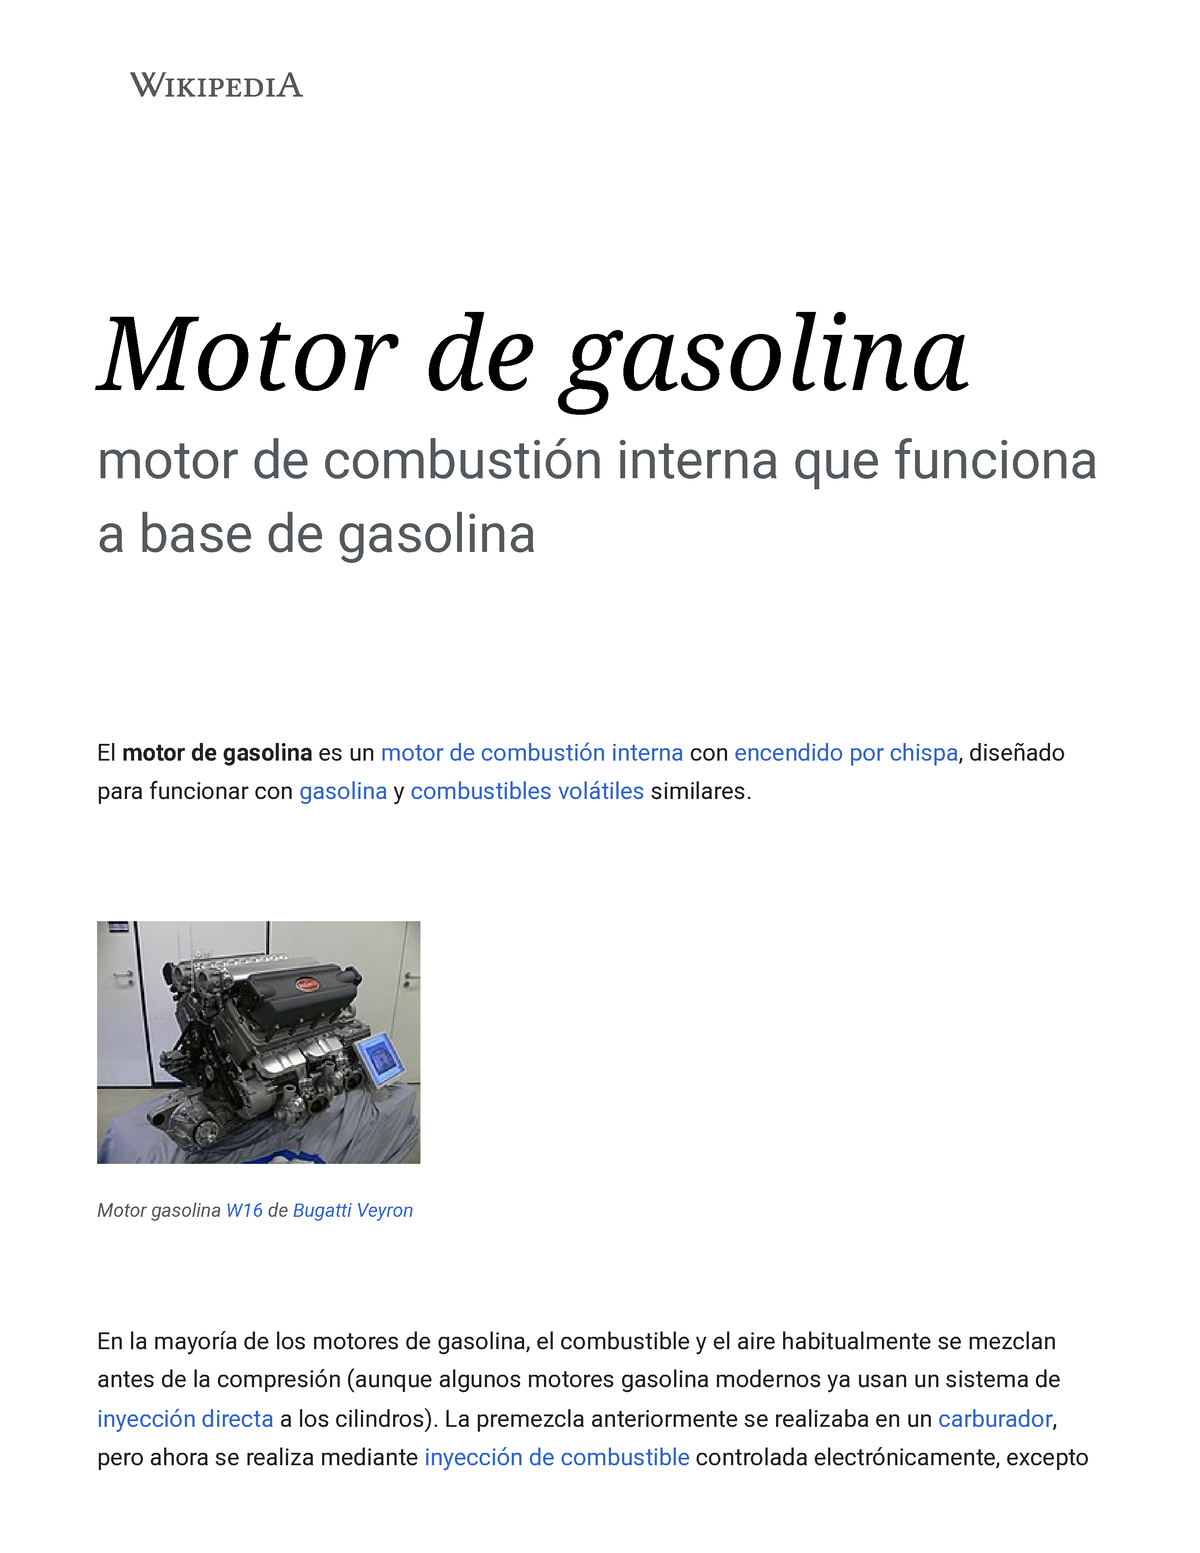 Gasolina - Wikipedia